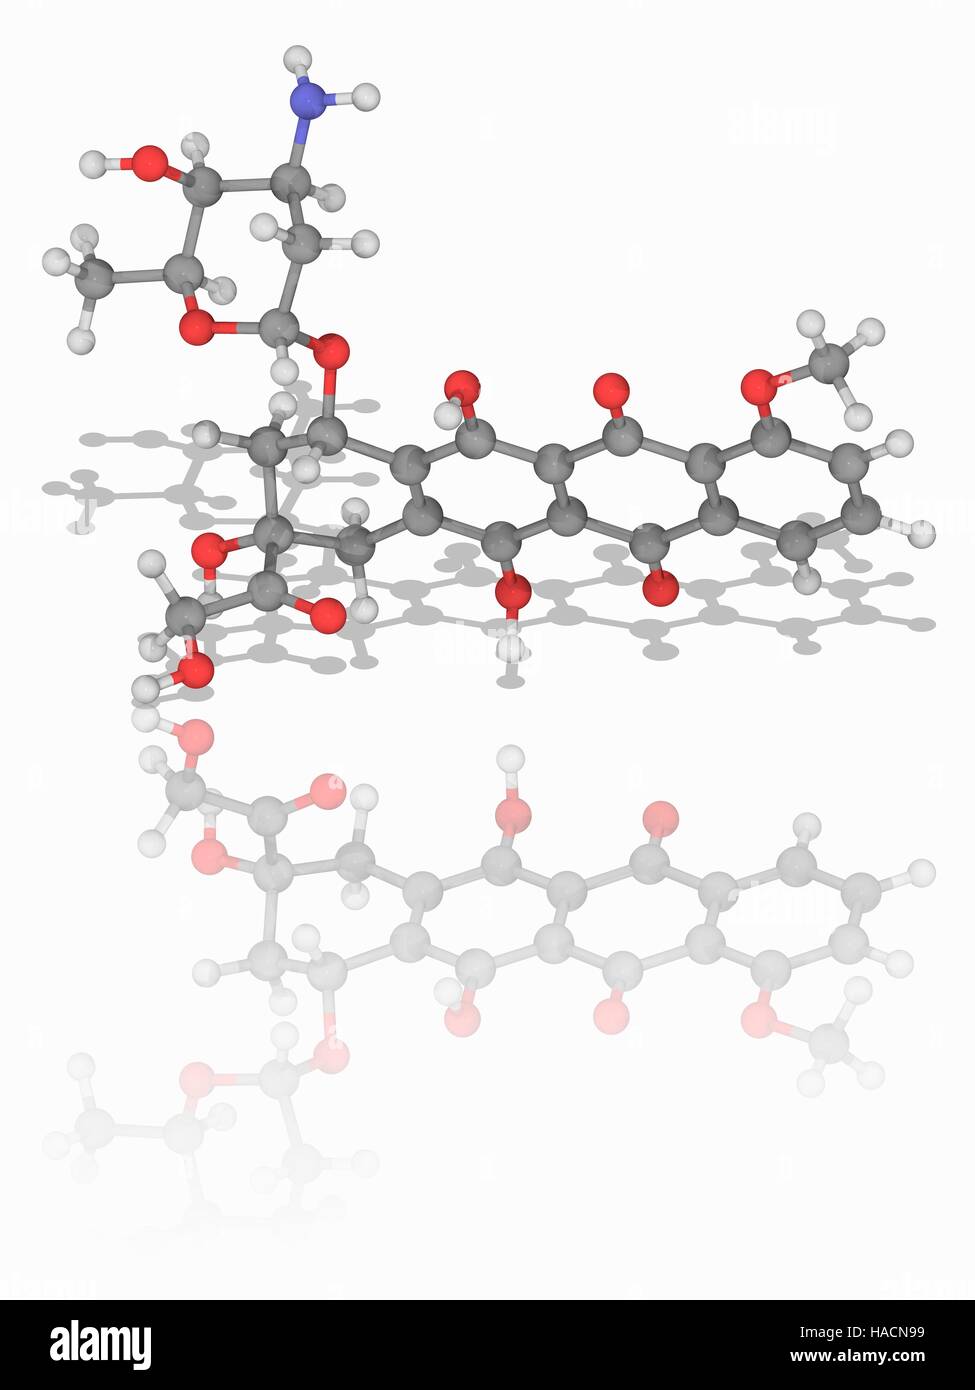 Doxorubicin. Molekülmodell von Chemotherapie Droge Doxorubicin (C27. H29. N.O11), gegen eine Vielzahl von Krebserkrankungen eingesetzt. Es ist ein Handelsname Adriamycin. Atome als Kugeln dargestellt werden und sind farblich gekennzeichnet: Kohlenstoff (grau), Wasserstoff (weiß), Stickstoff (blau) und Sauerstoff (rot). Abbildung. Stockfoto